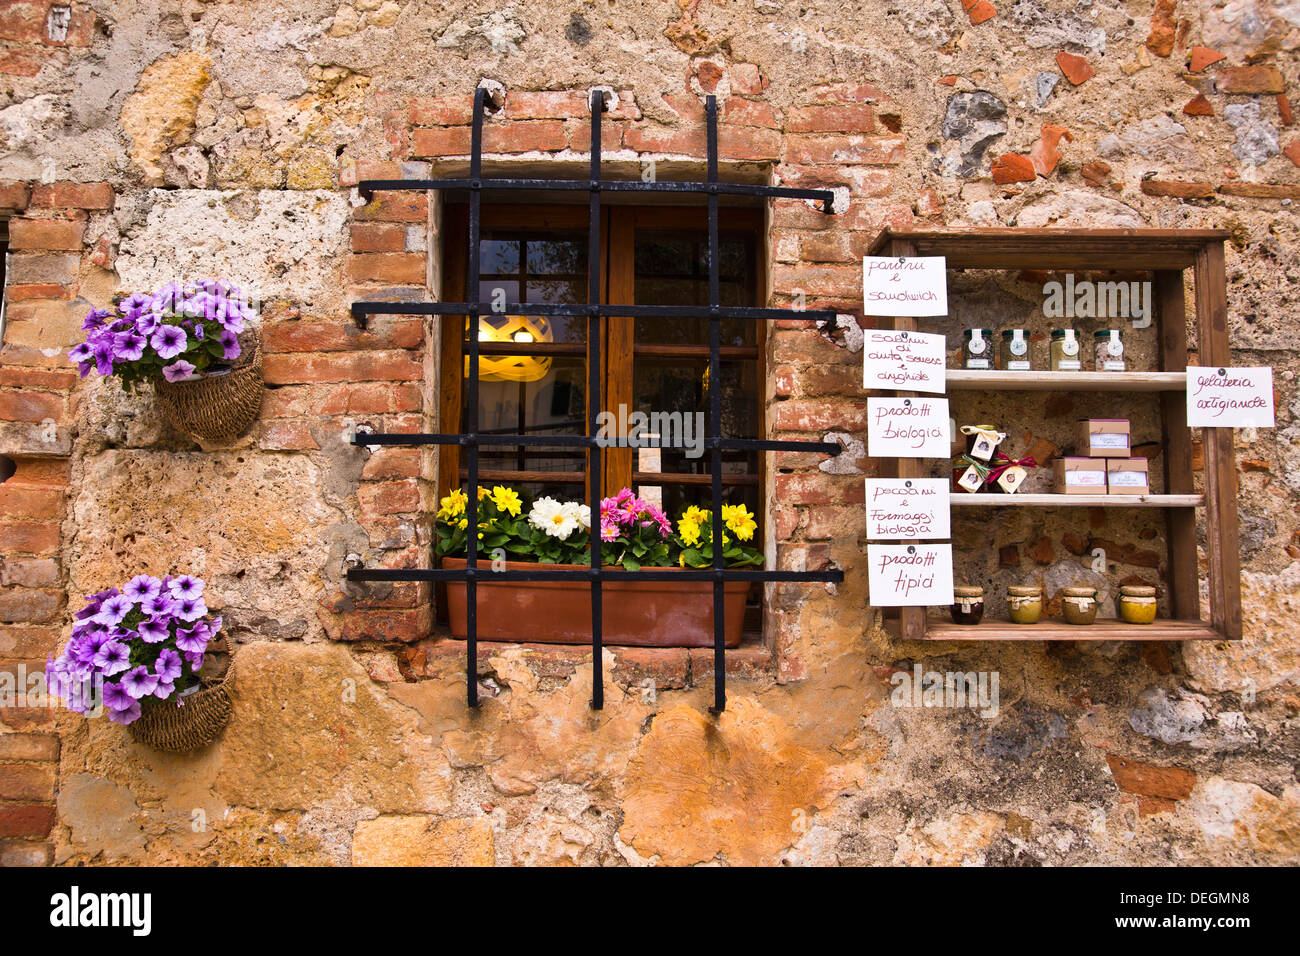 Affichage d'un magasin, Monteriggioni, Province de Sienne, Toscane, Italie Banque D'Images